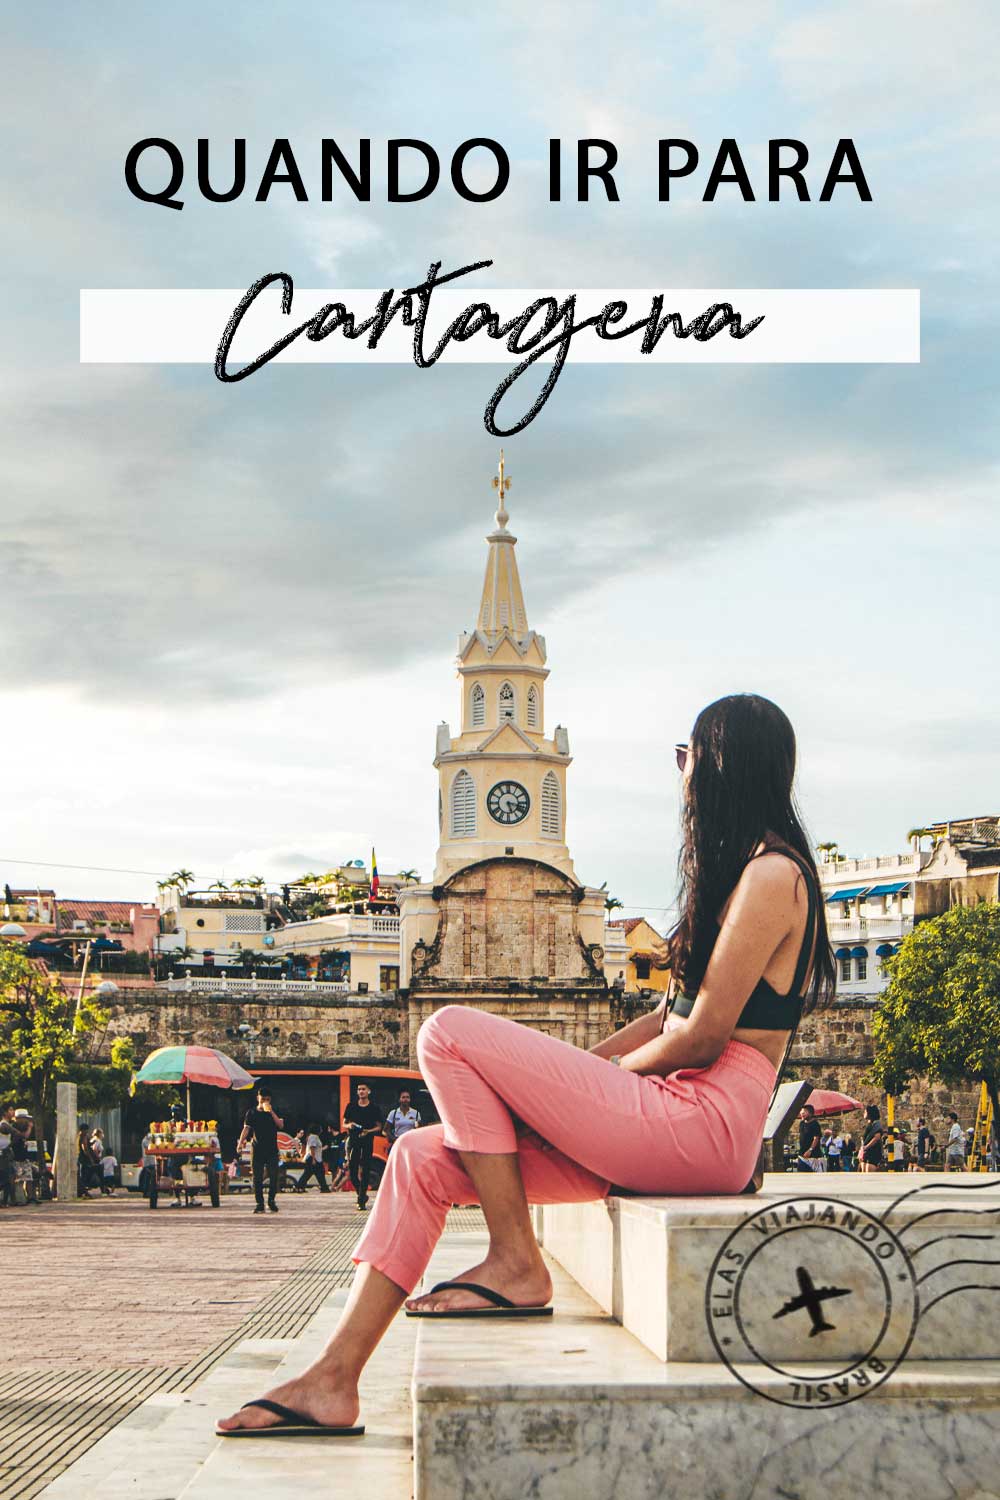 Pin de quando ir para Cartagena com foto na Torre do Relógio